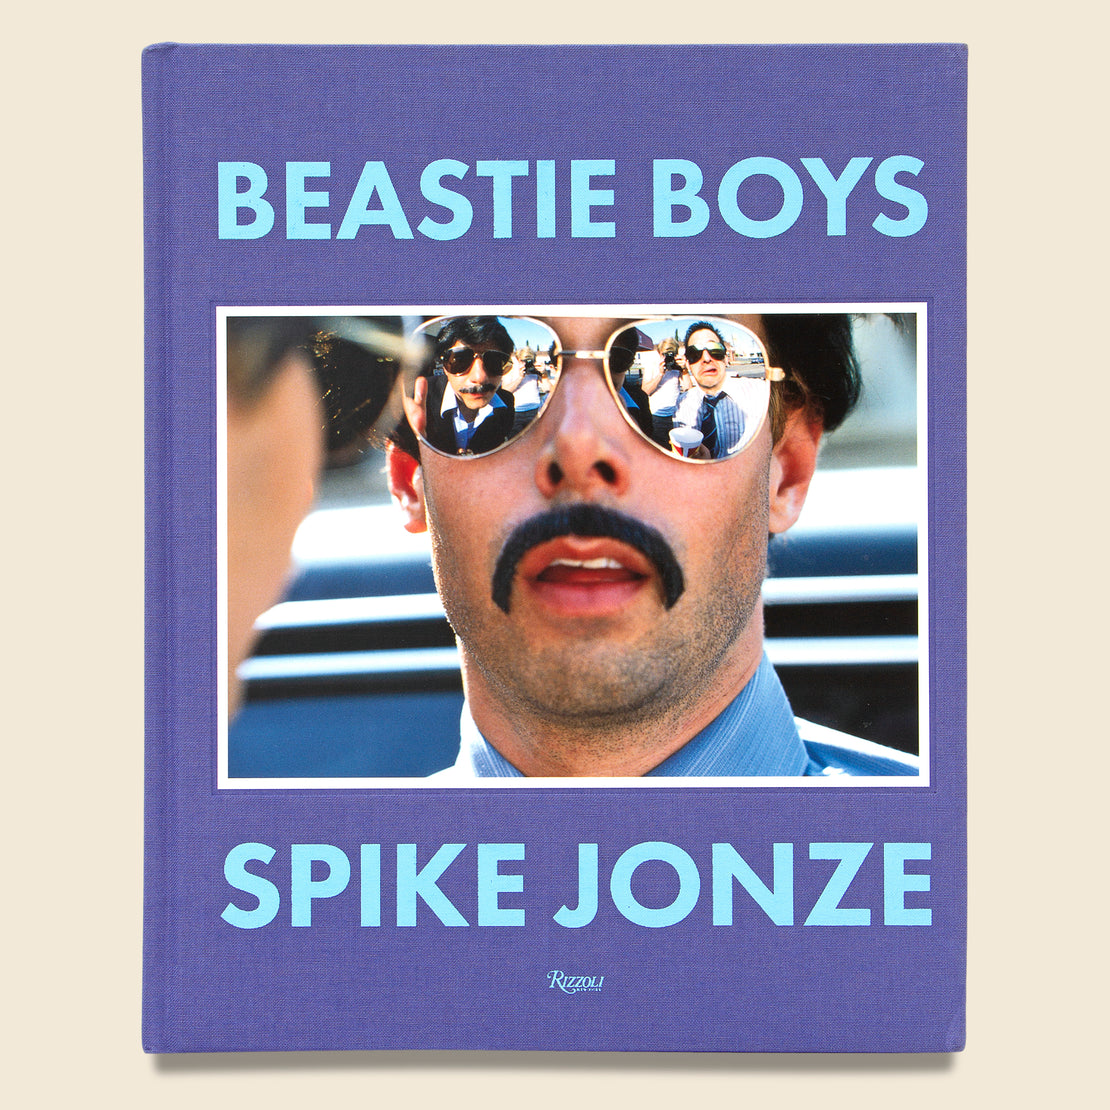 Bookstore Beastie Boys by Spike Jonze